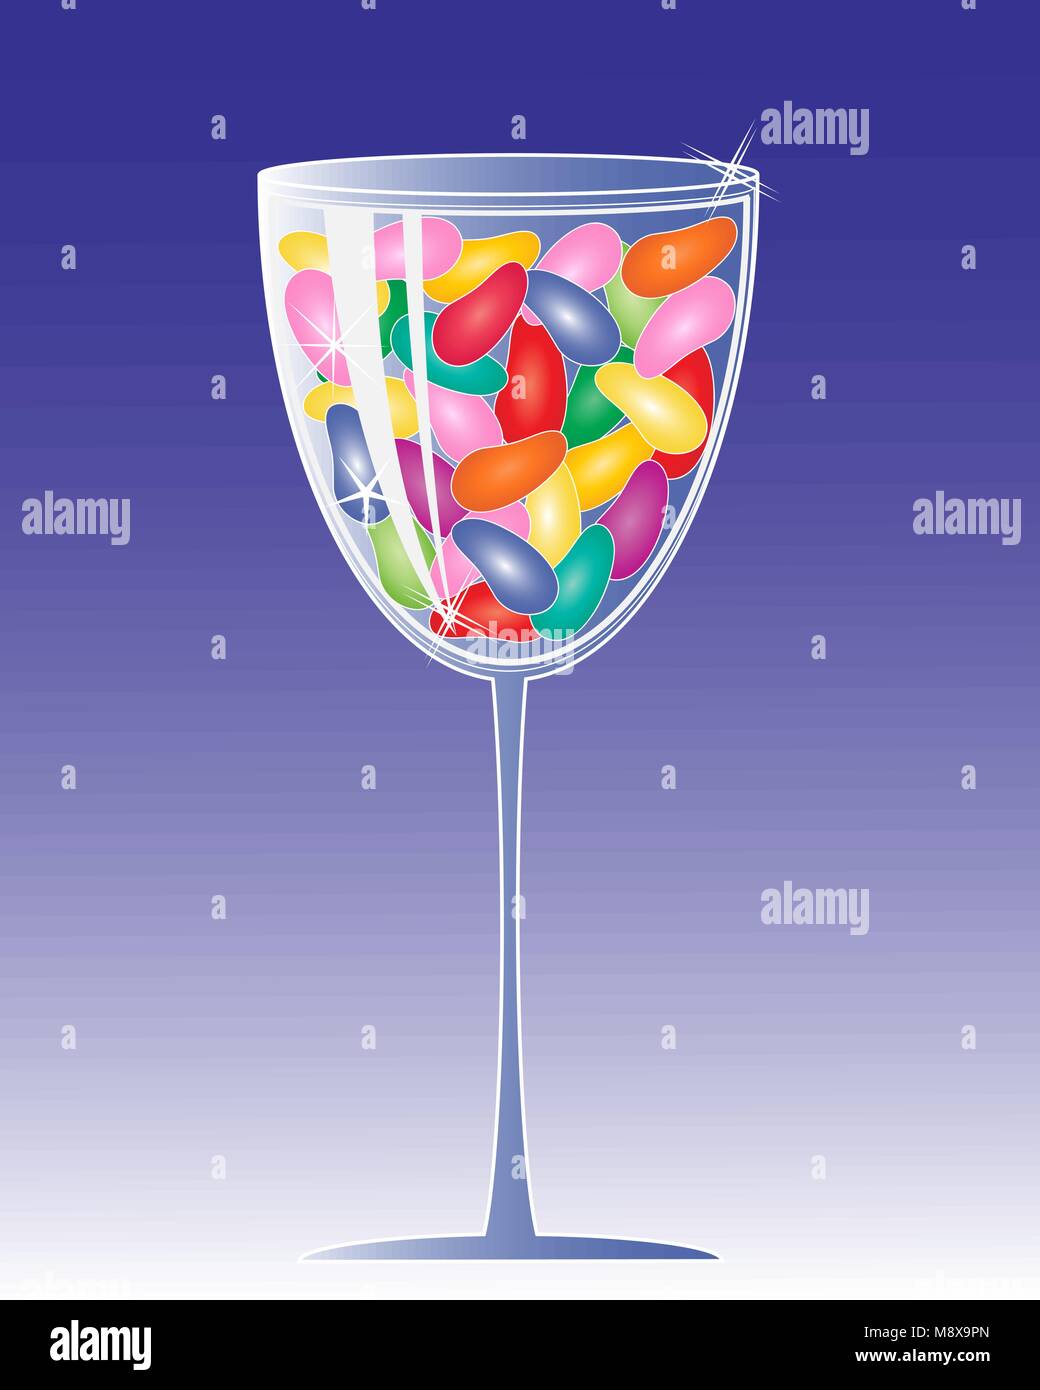 Un vecteur illustration en eps 10 format d'un verre en cristal verre coloré de jelly beans avec white sparkles sur fond violet Illustration de Vecteur